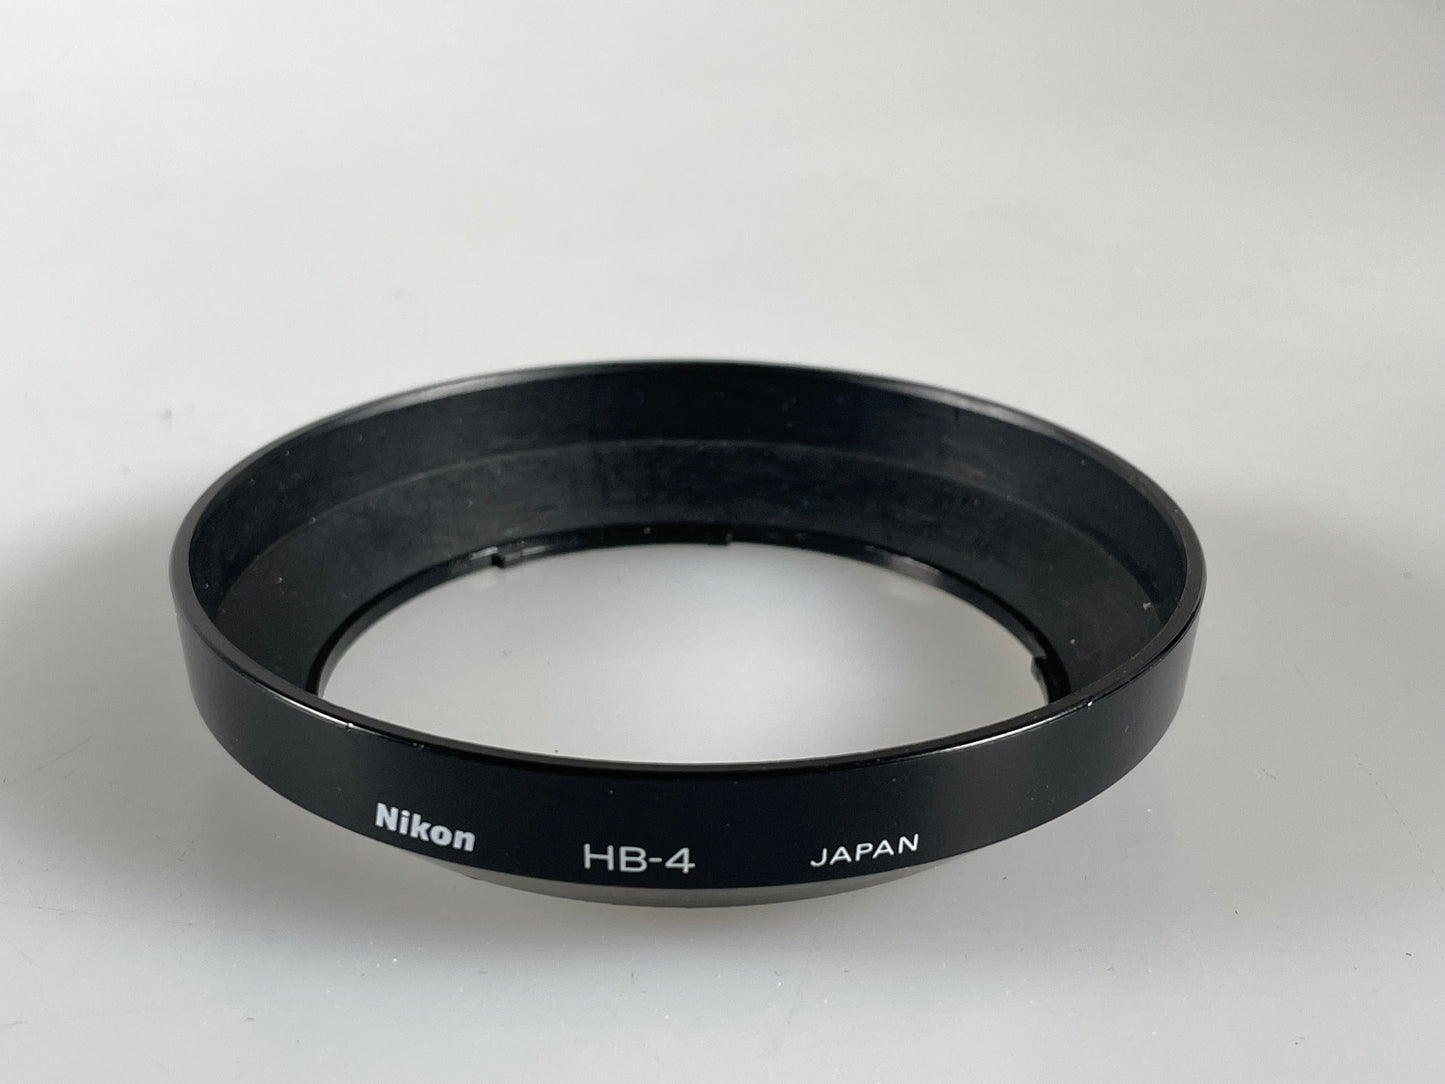 Nikon Genuine HB-4 wide angle bayonet lens hood for AF f2.8 20mm lens